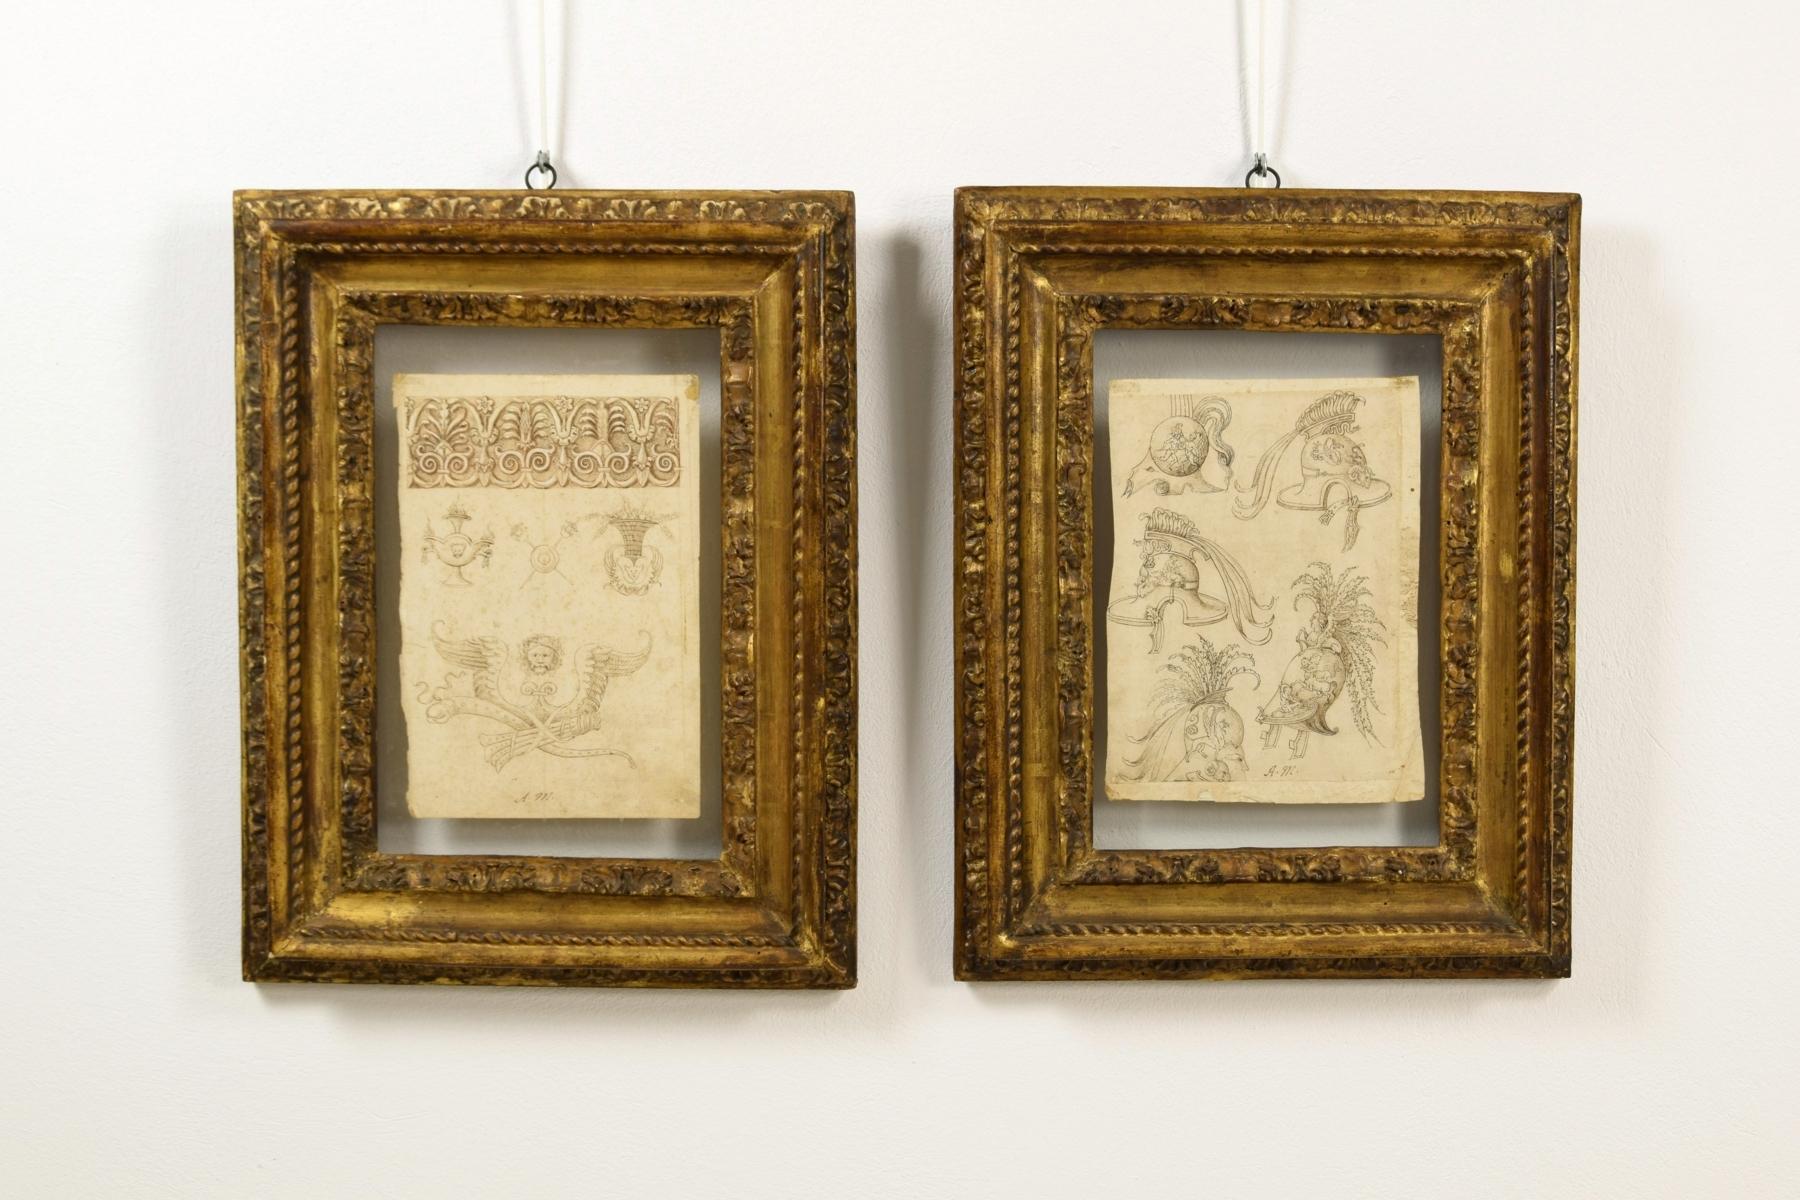 17. Jahrhundert, Paar Tuschezeichnungen auf Papier mit Studien zu Grotesken, Friesen und Helmen.

Mittelitalienischer Maler des 17. Jahrhunderts, signiert mit Monogram 